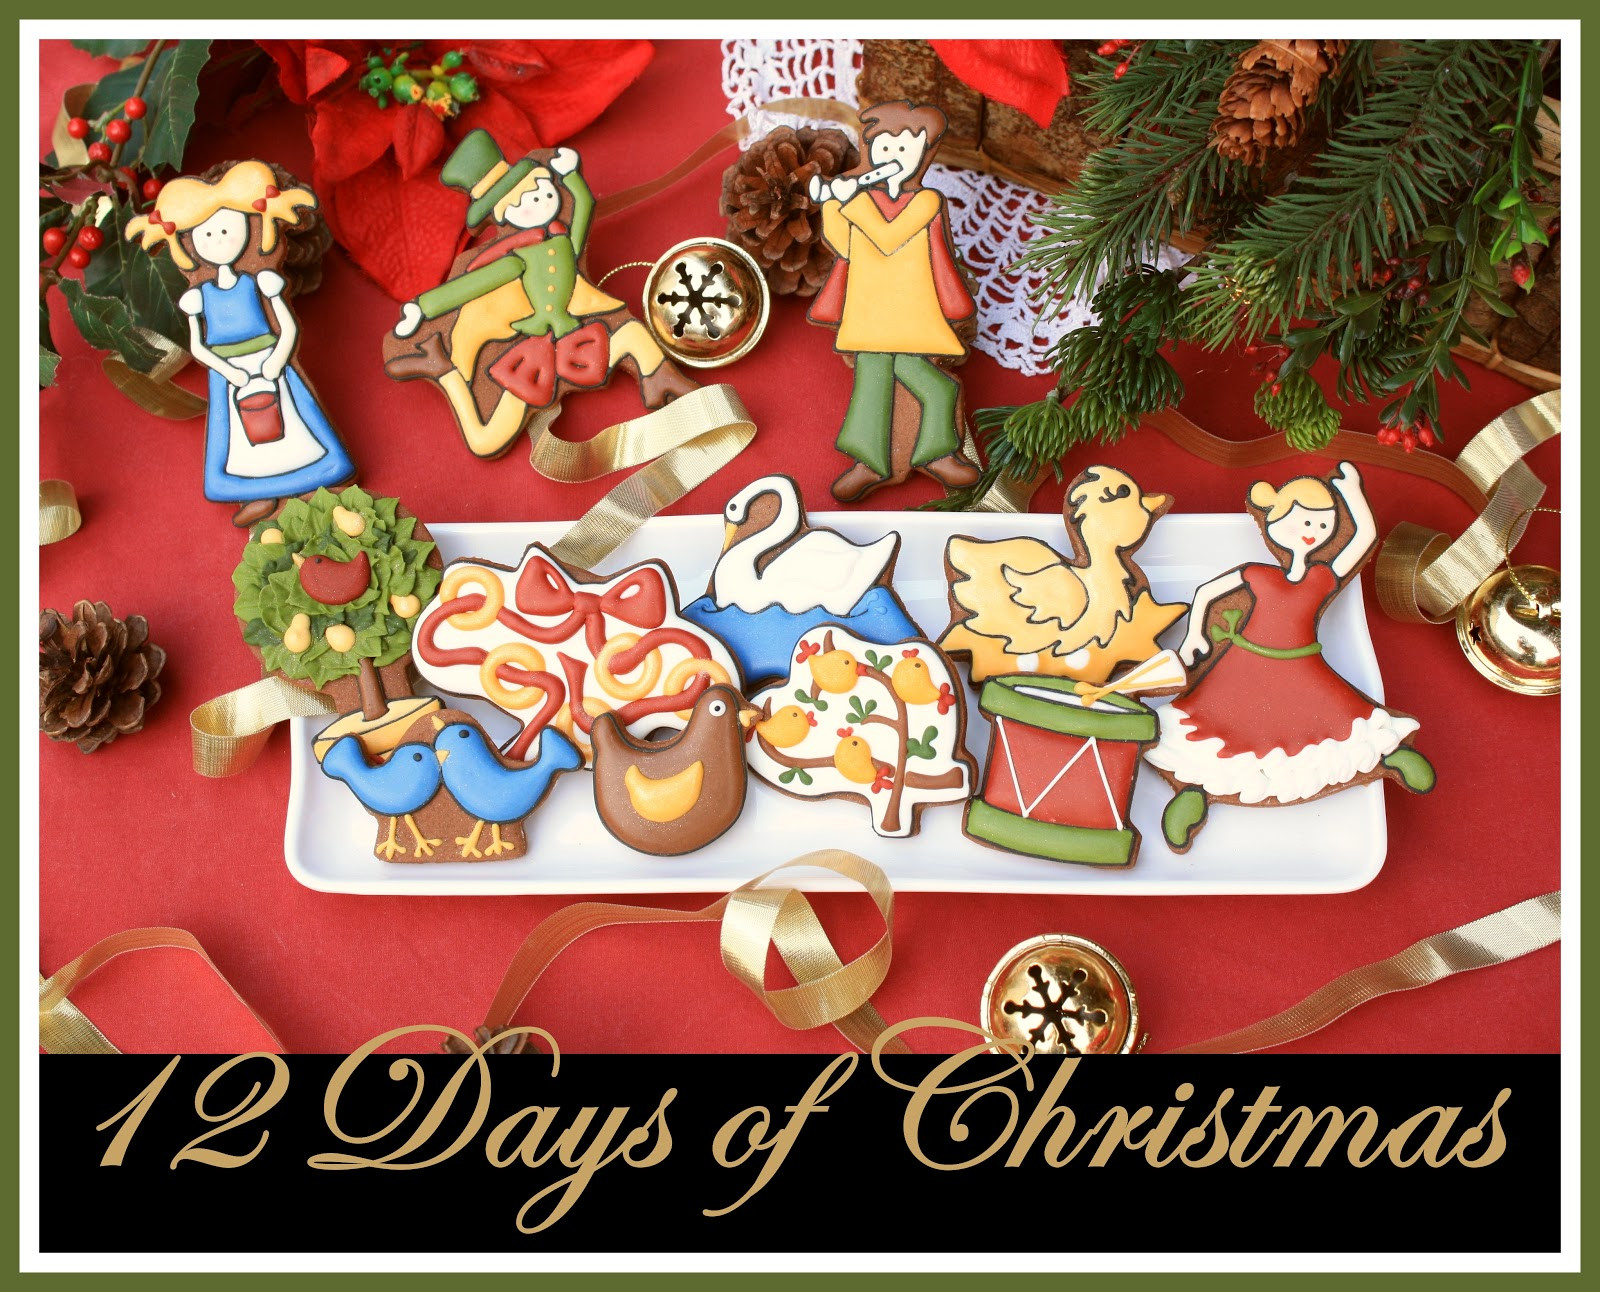 12 Days Of Christmas Cookies
 12 Days of Christmas Cookies